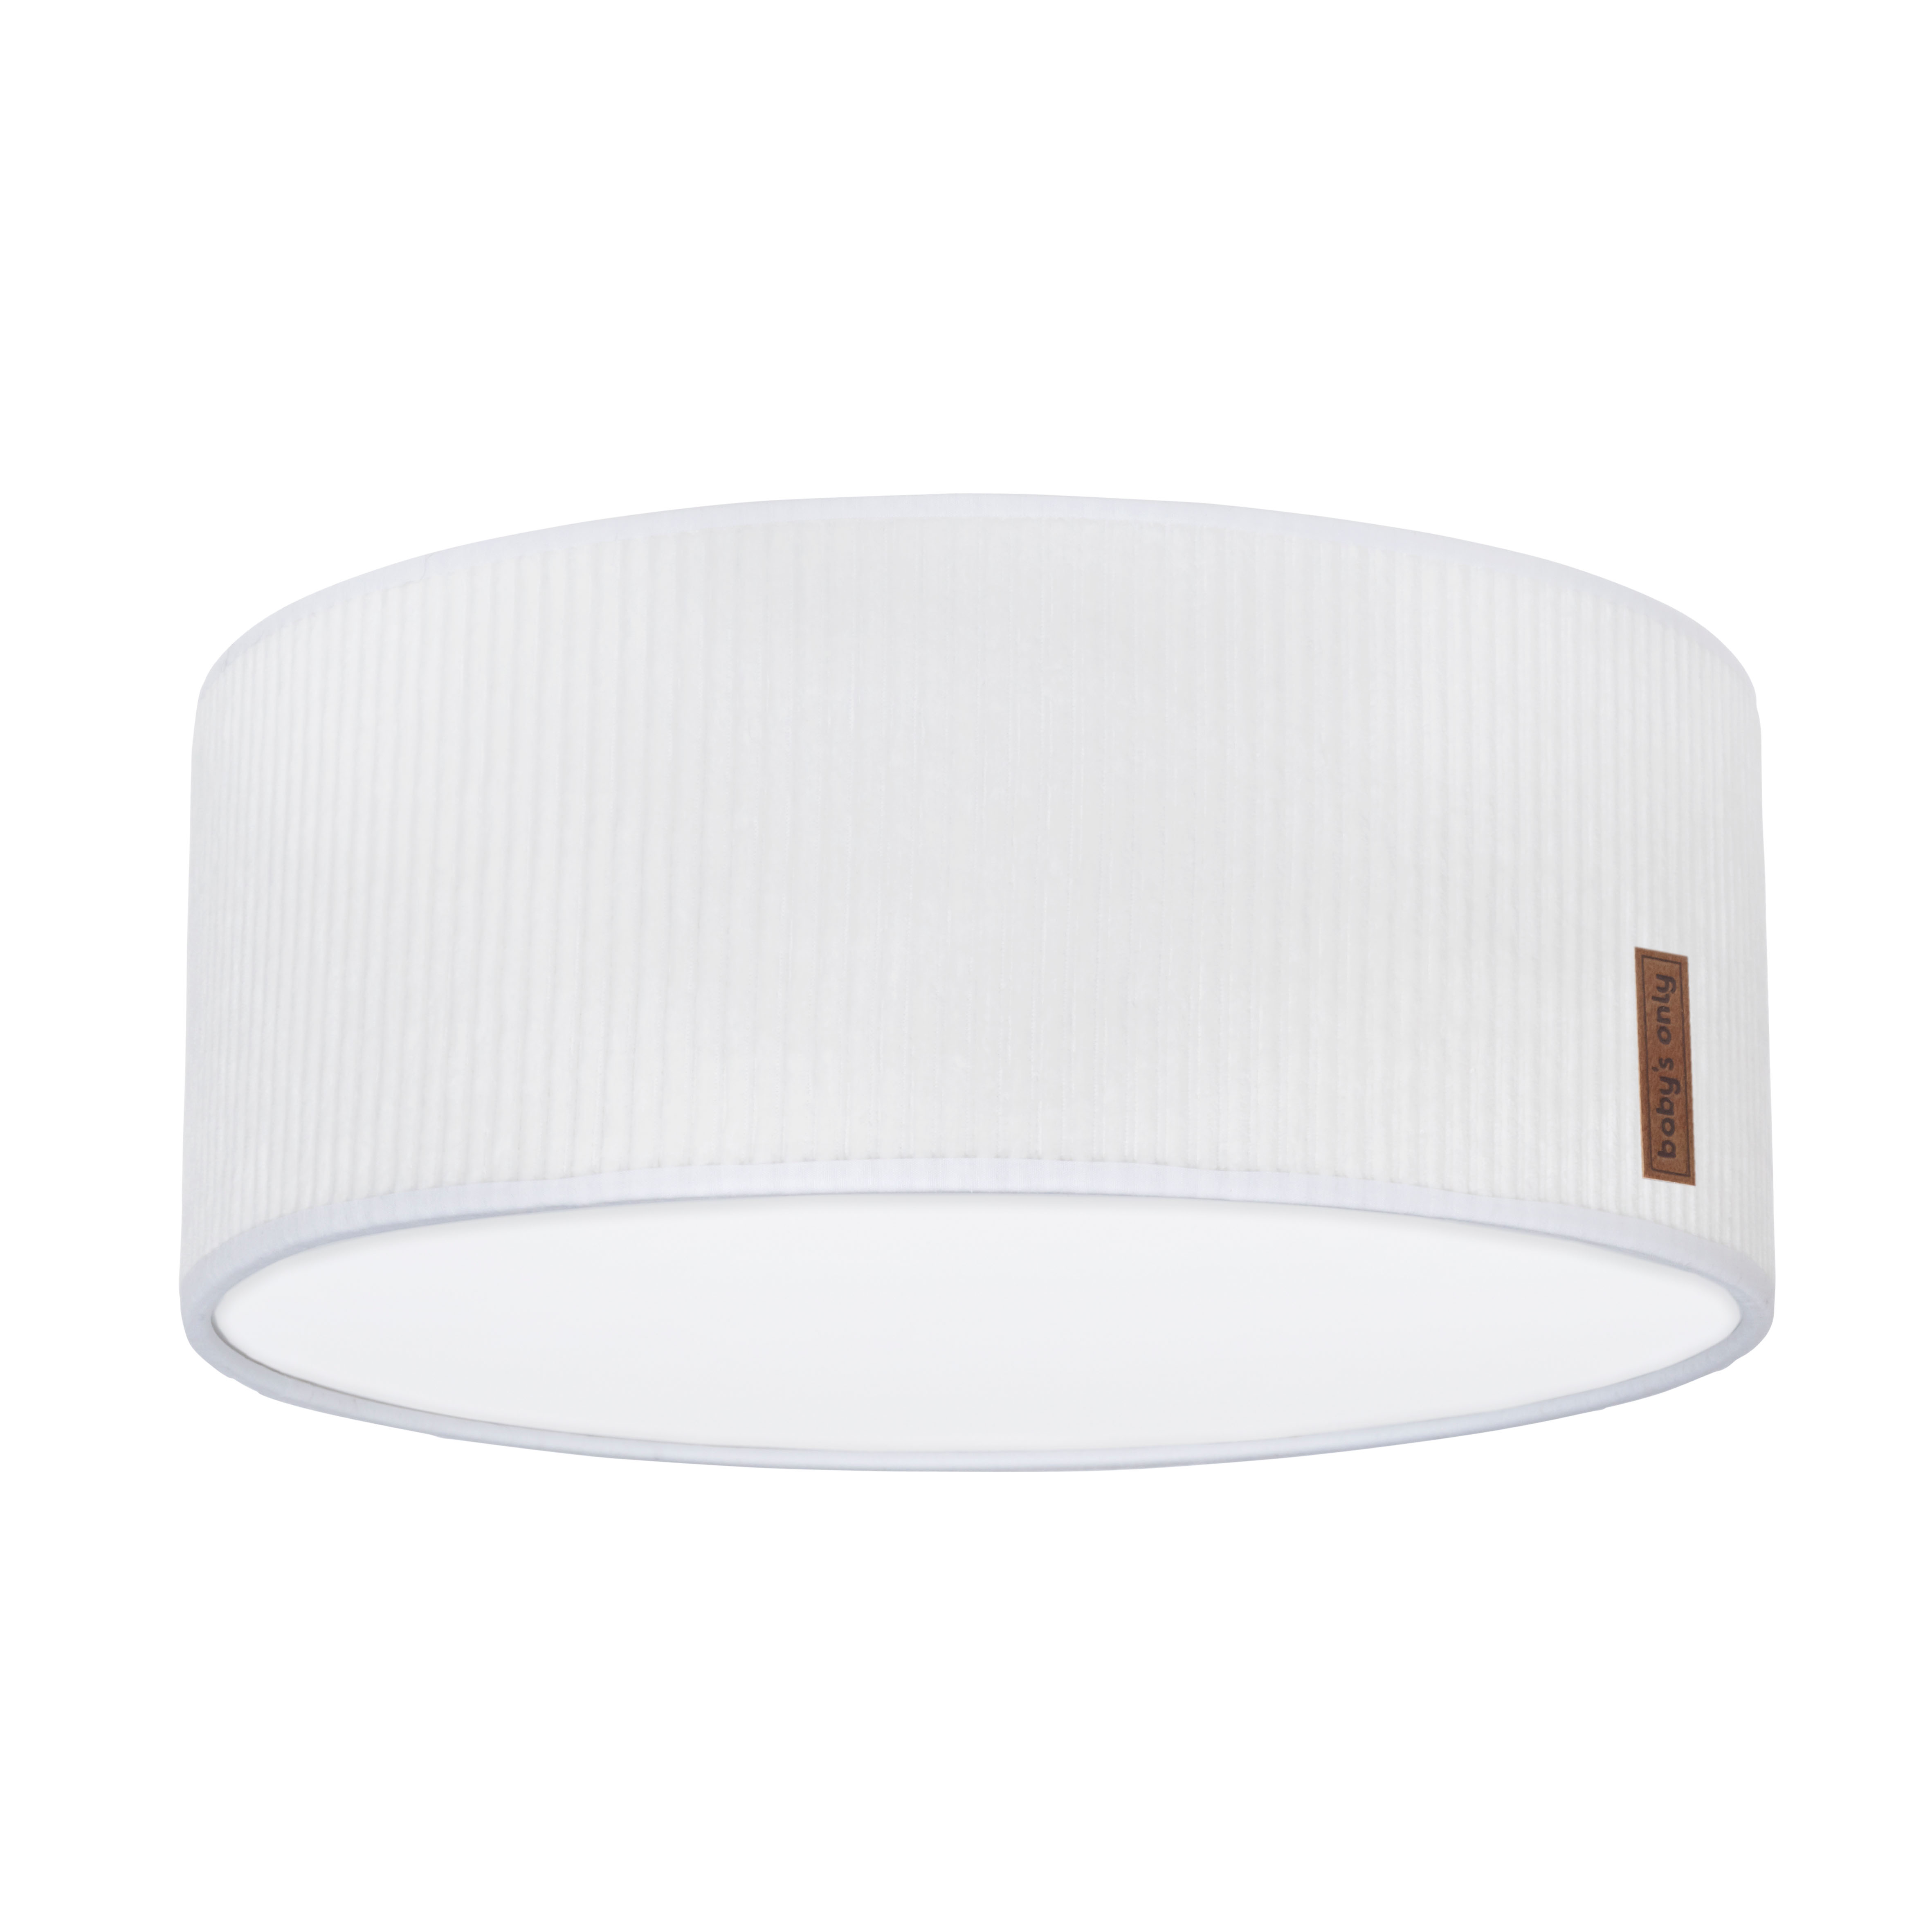 Lampe de plafond Sense blanc - Ø35 cm